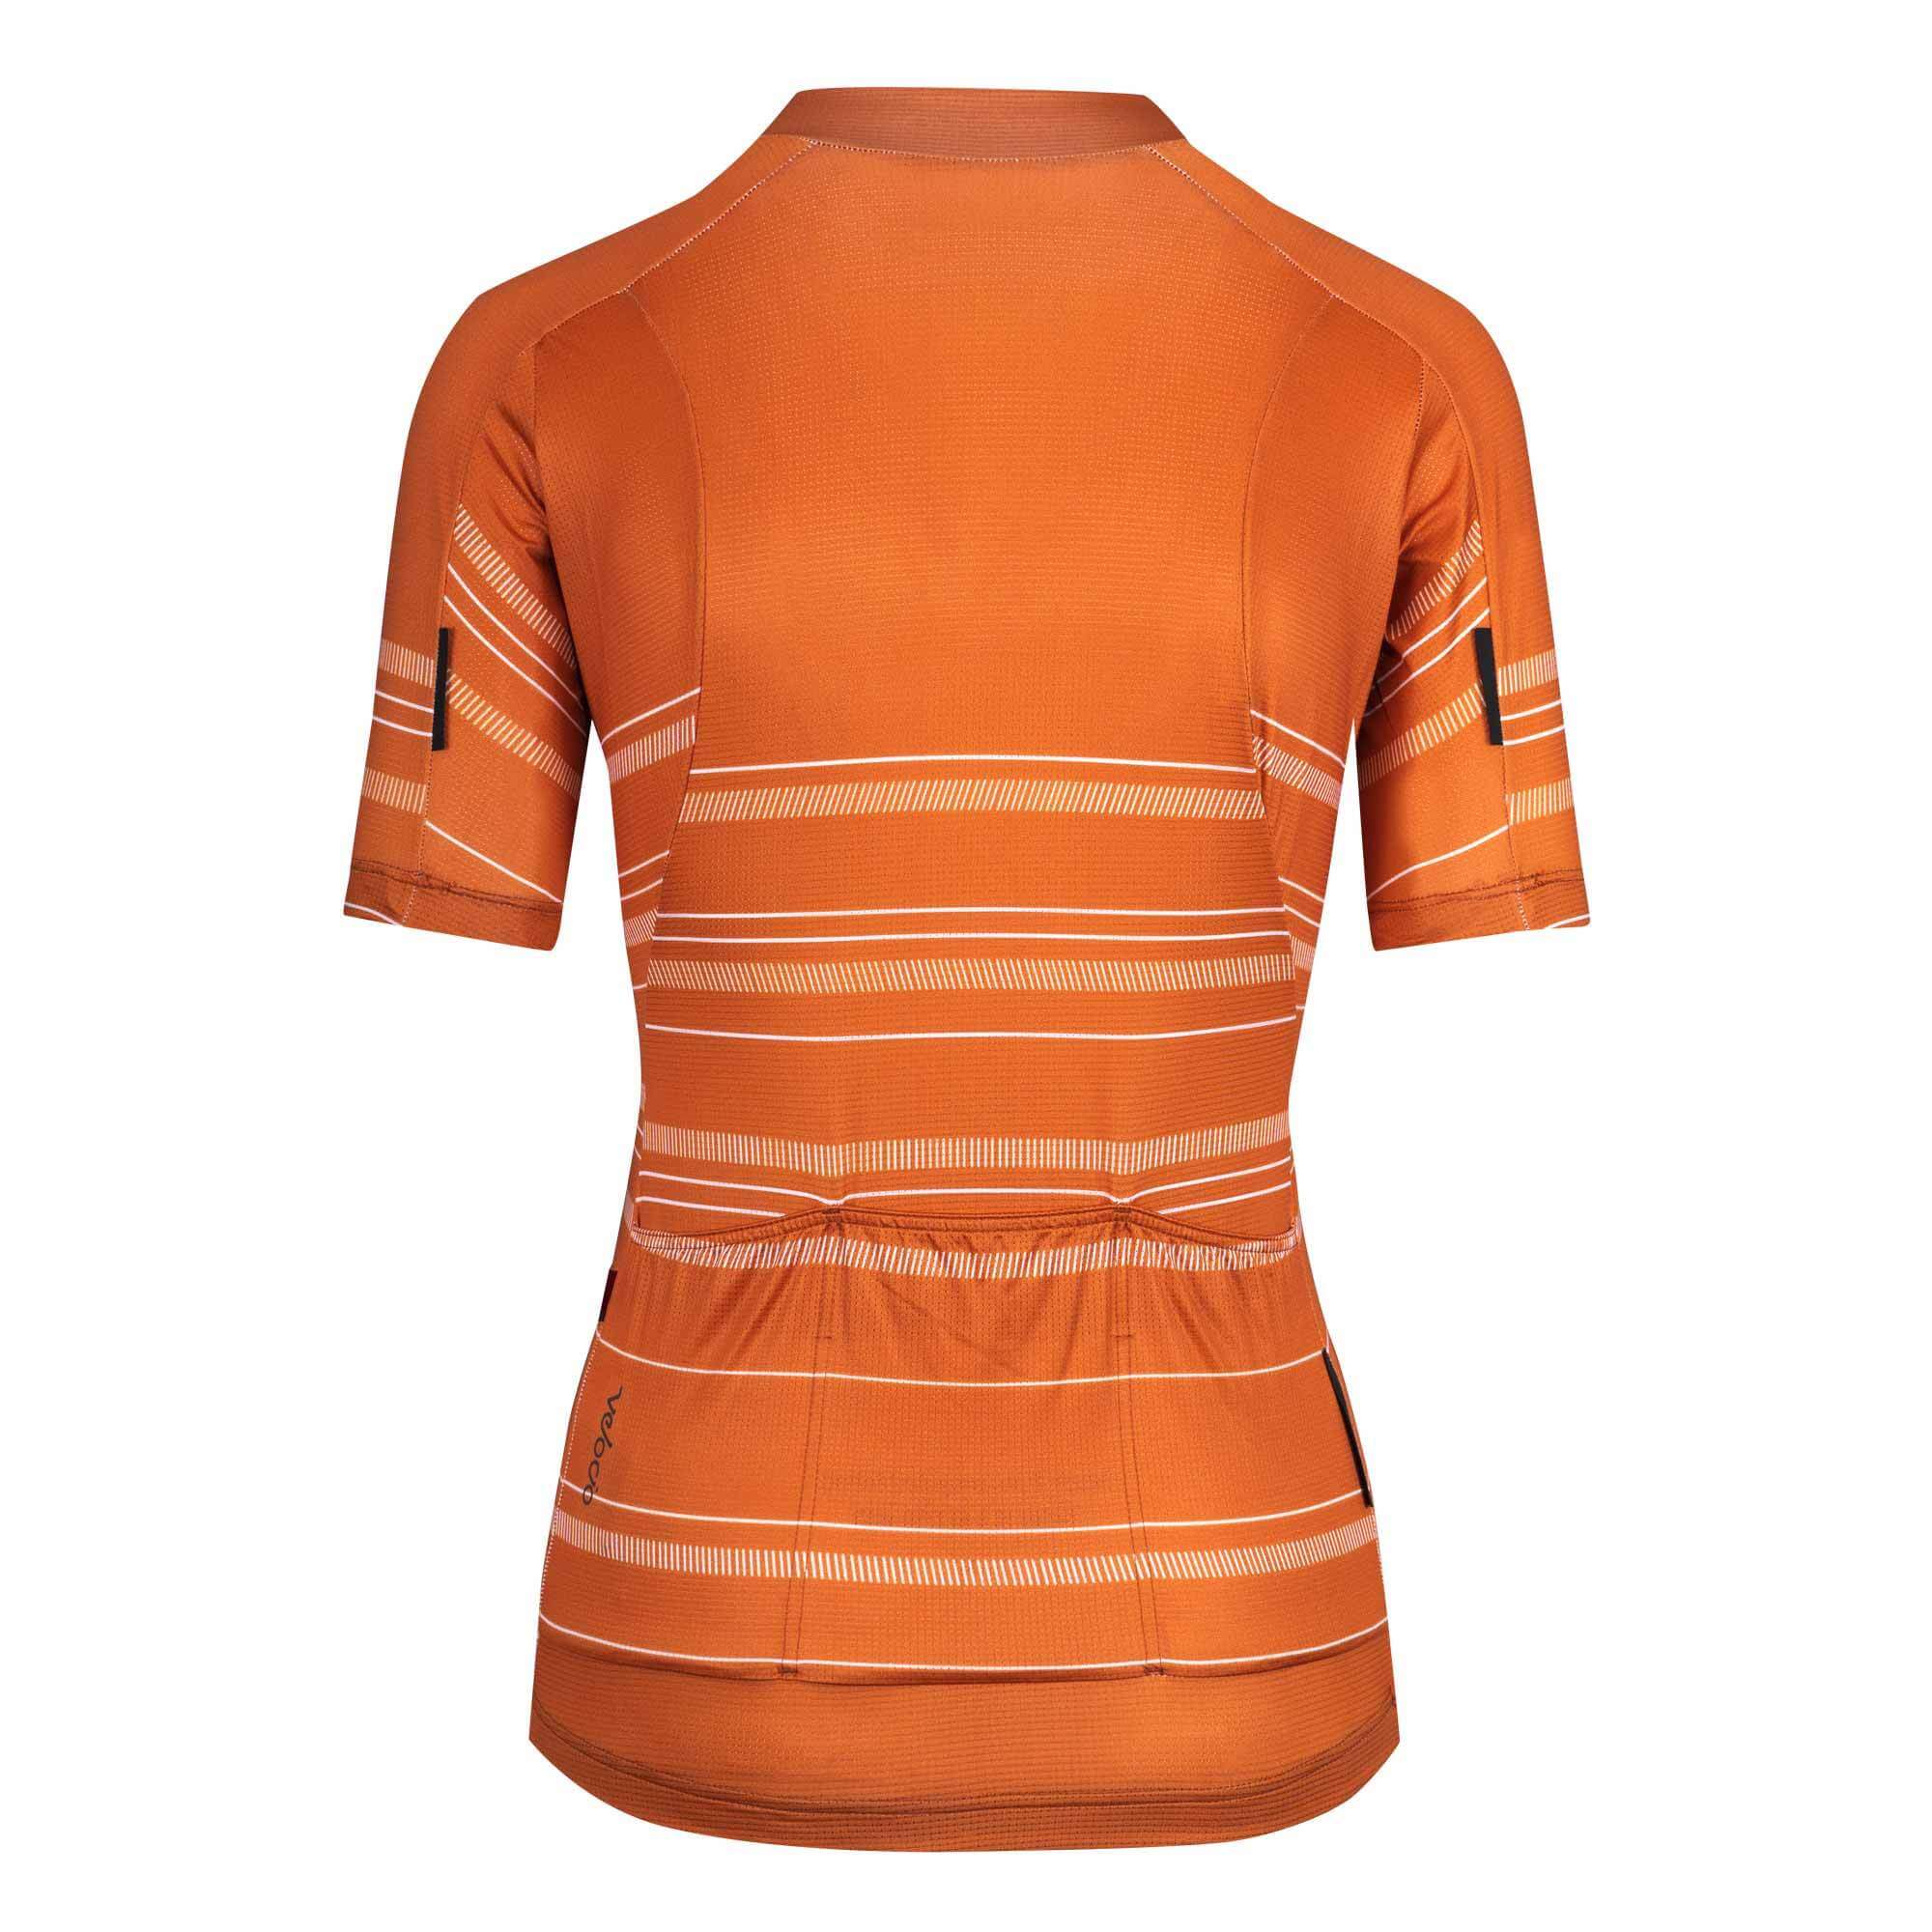 Women's Ultralight Jersey - Burnt Orange Harvest